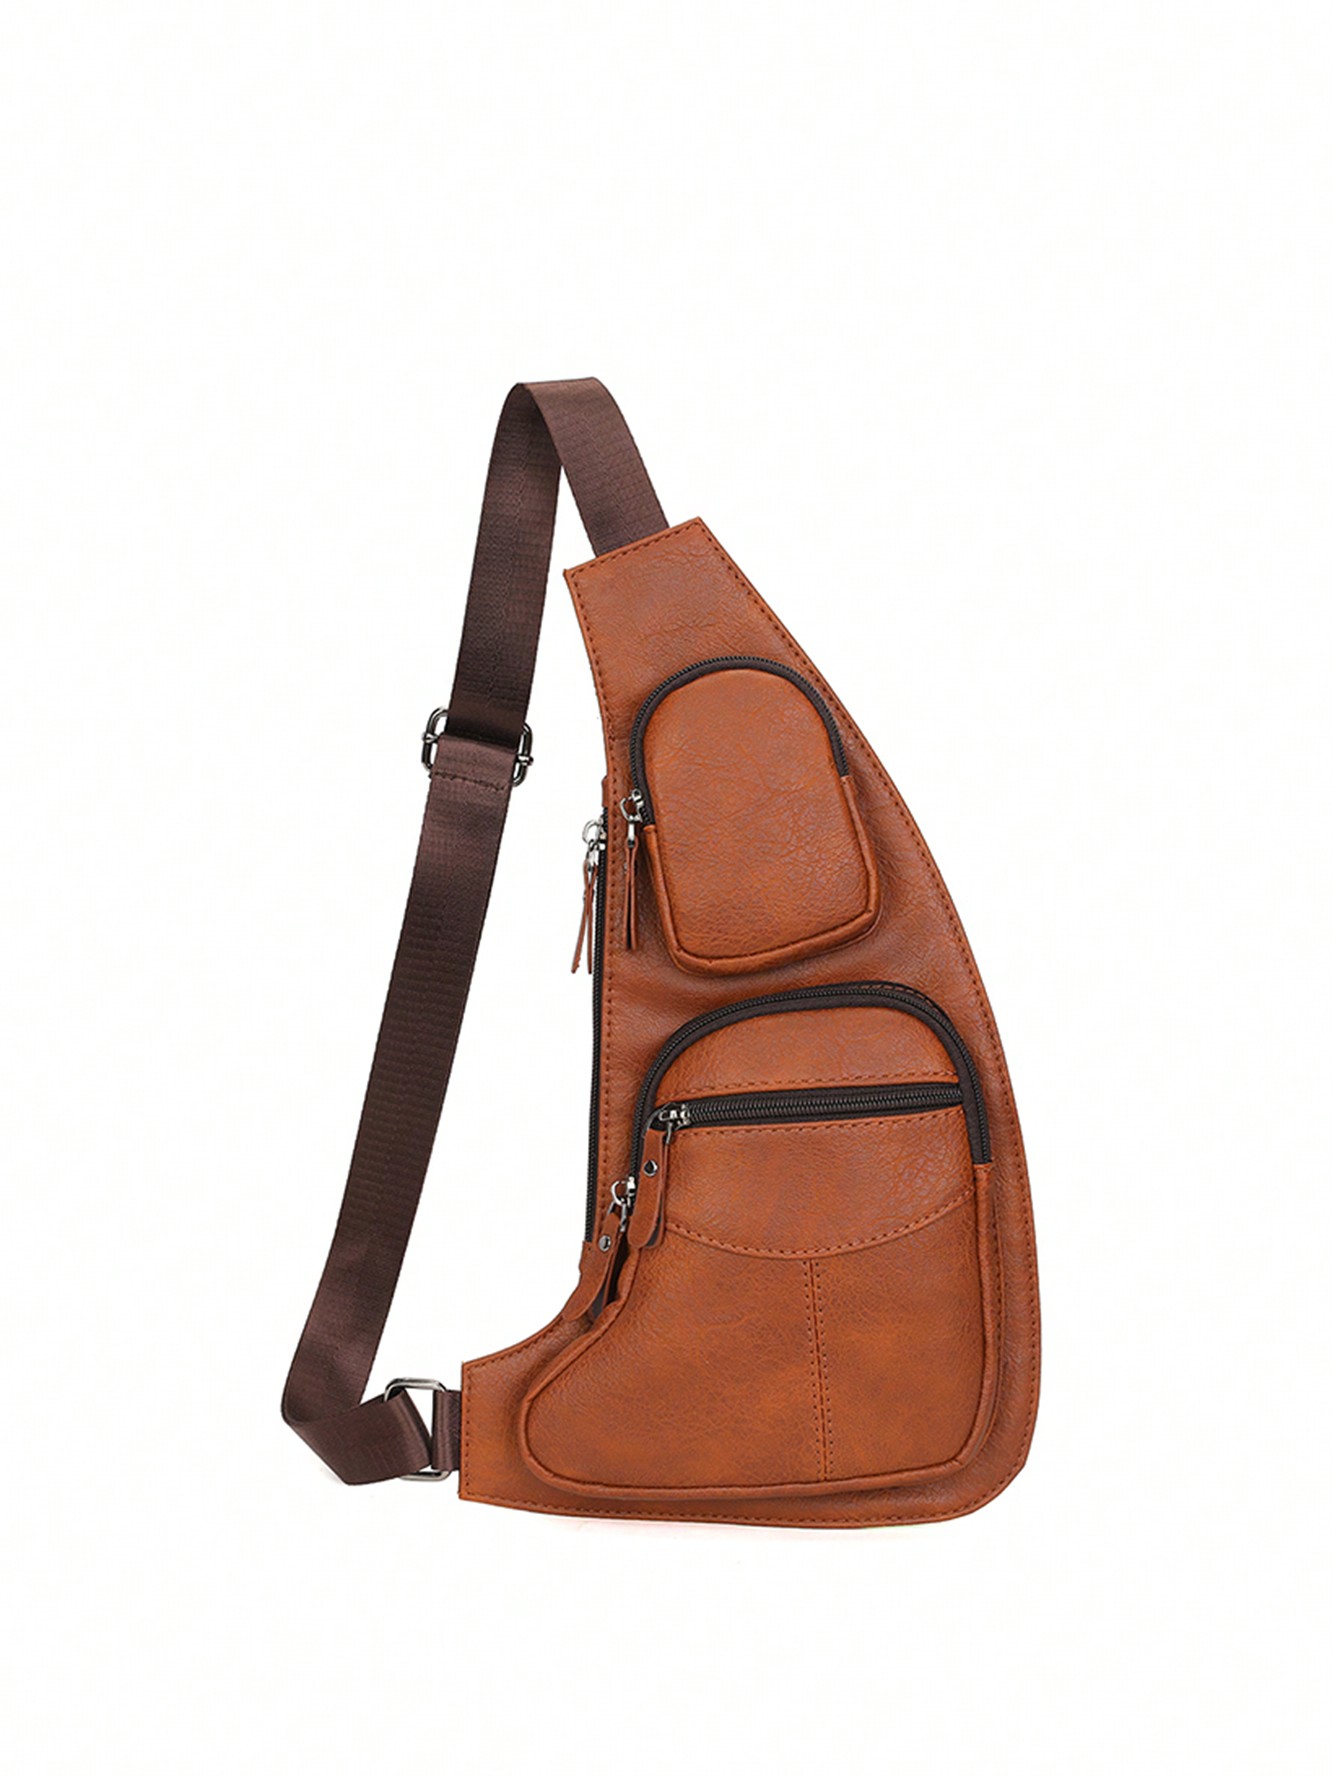 Мужская нагрудная сумка, коричневый сумка мужская кожаная сумка через плечо кожаная мужская сумка натуральная кожа барсетка кожаная